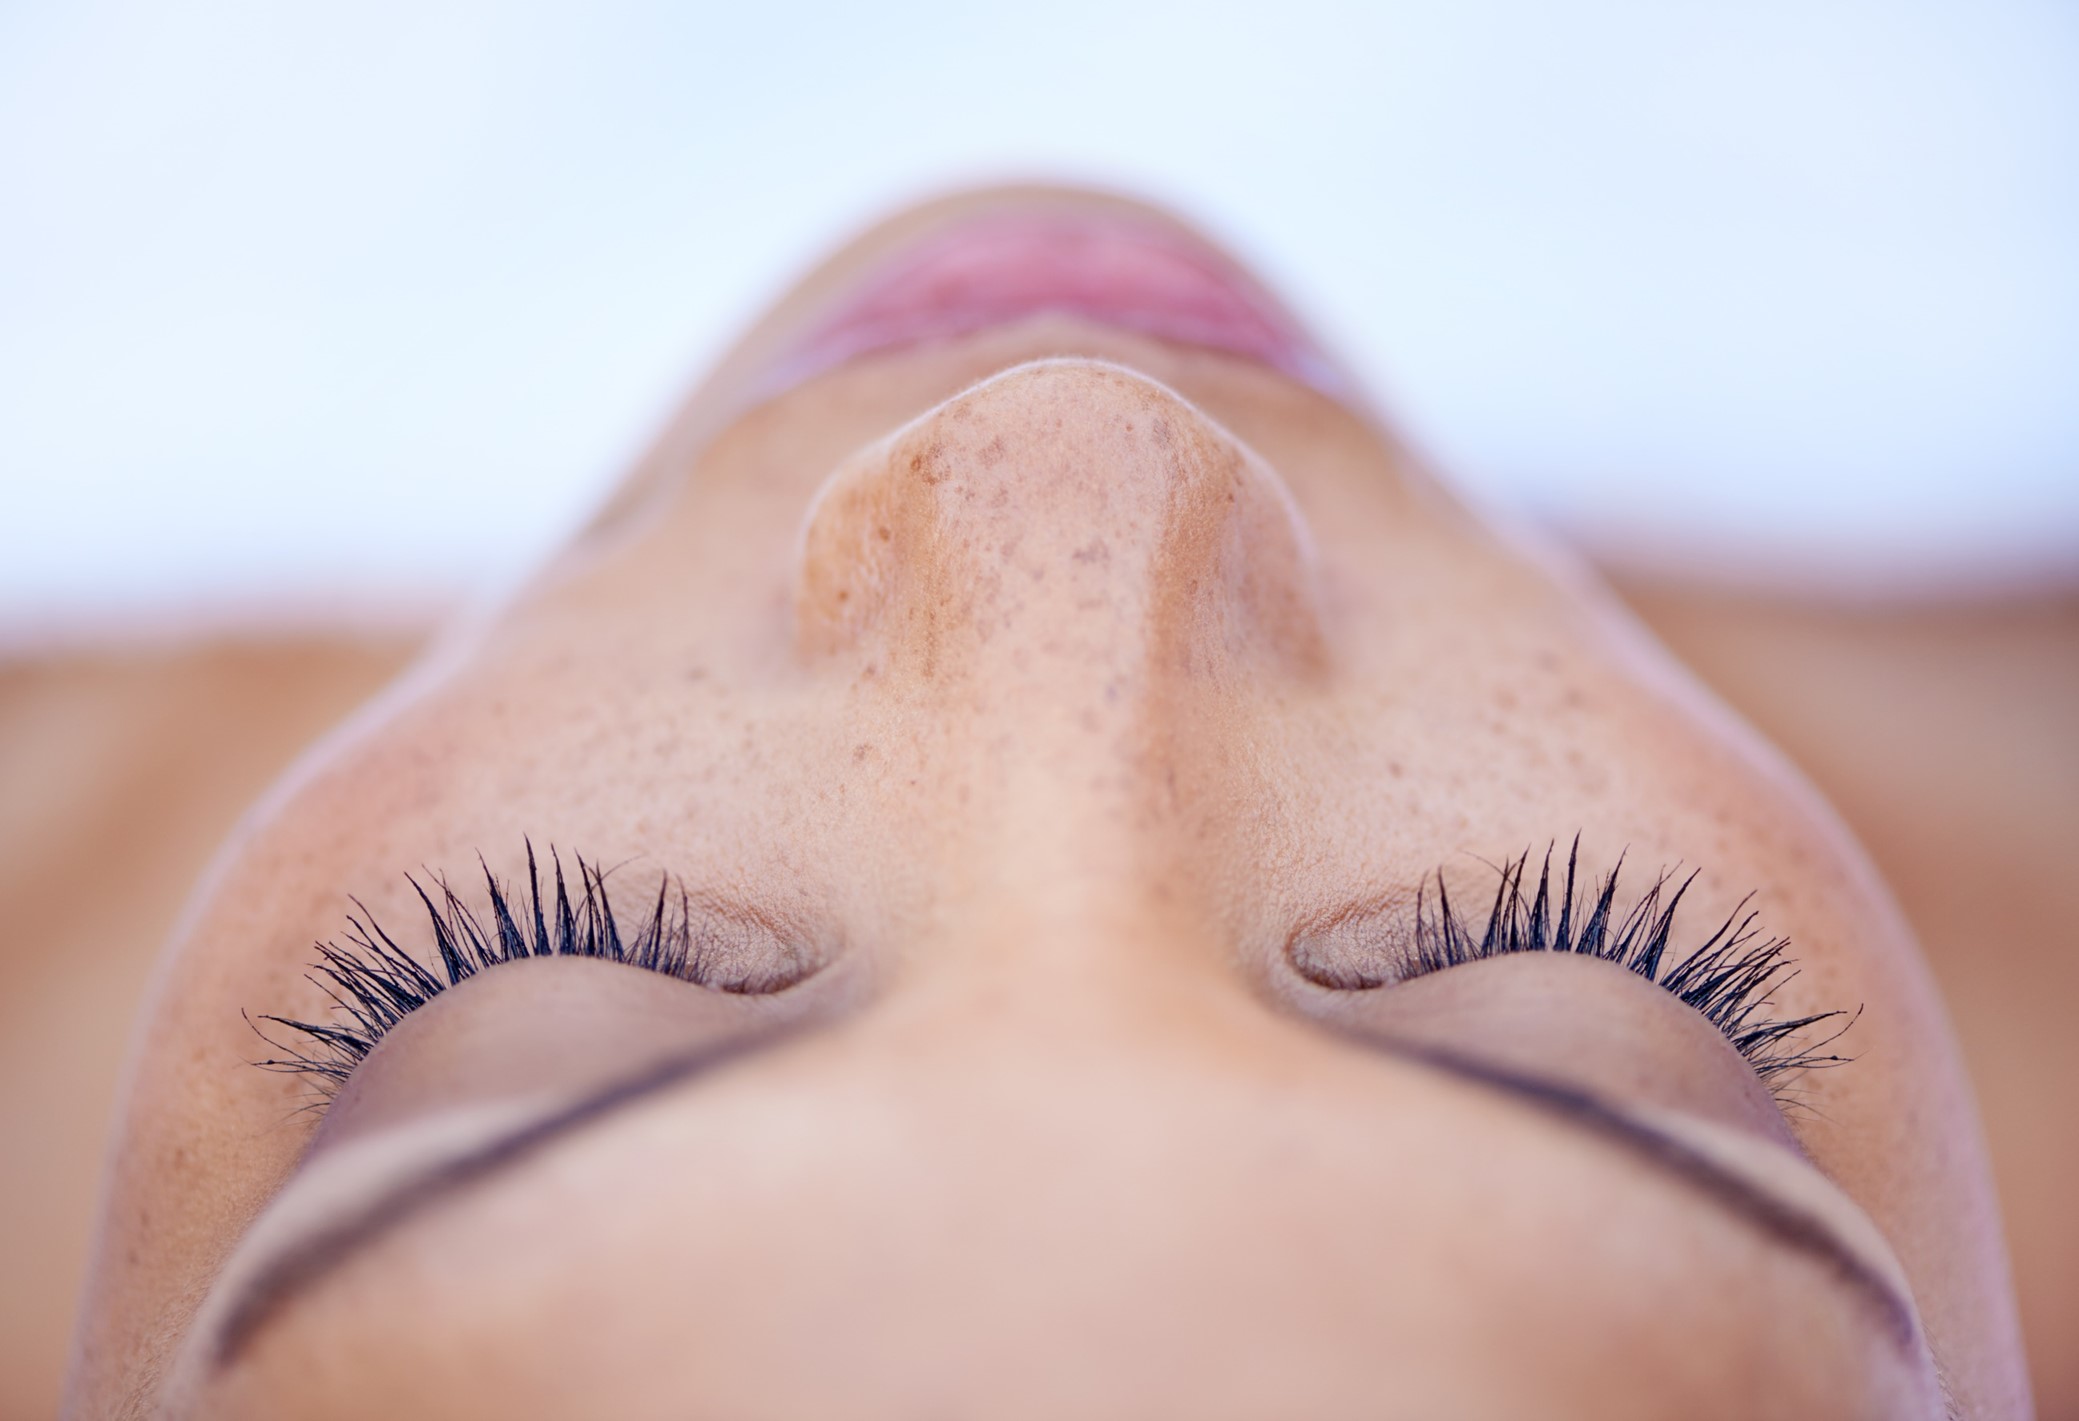 Házi botox - Ez a 3 összetevős arcmaszk csodát tesz a bőröddel